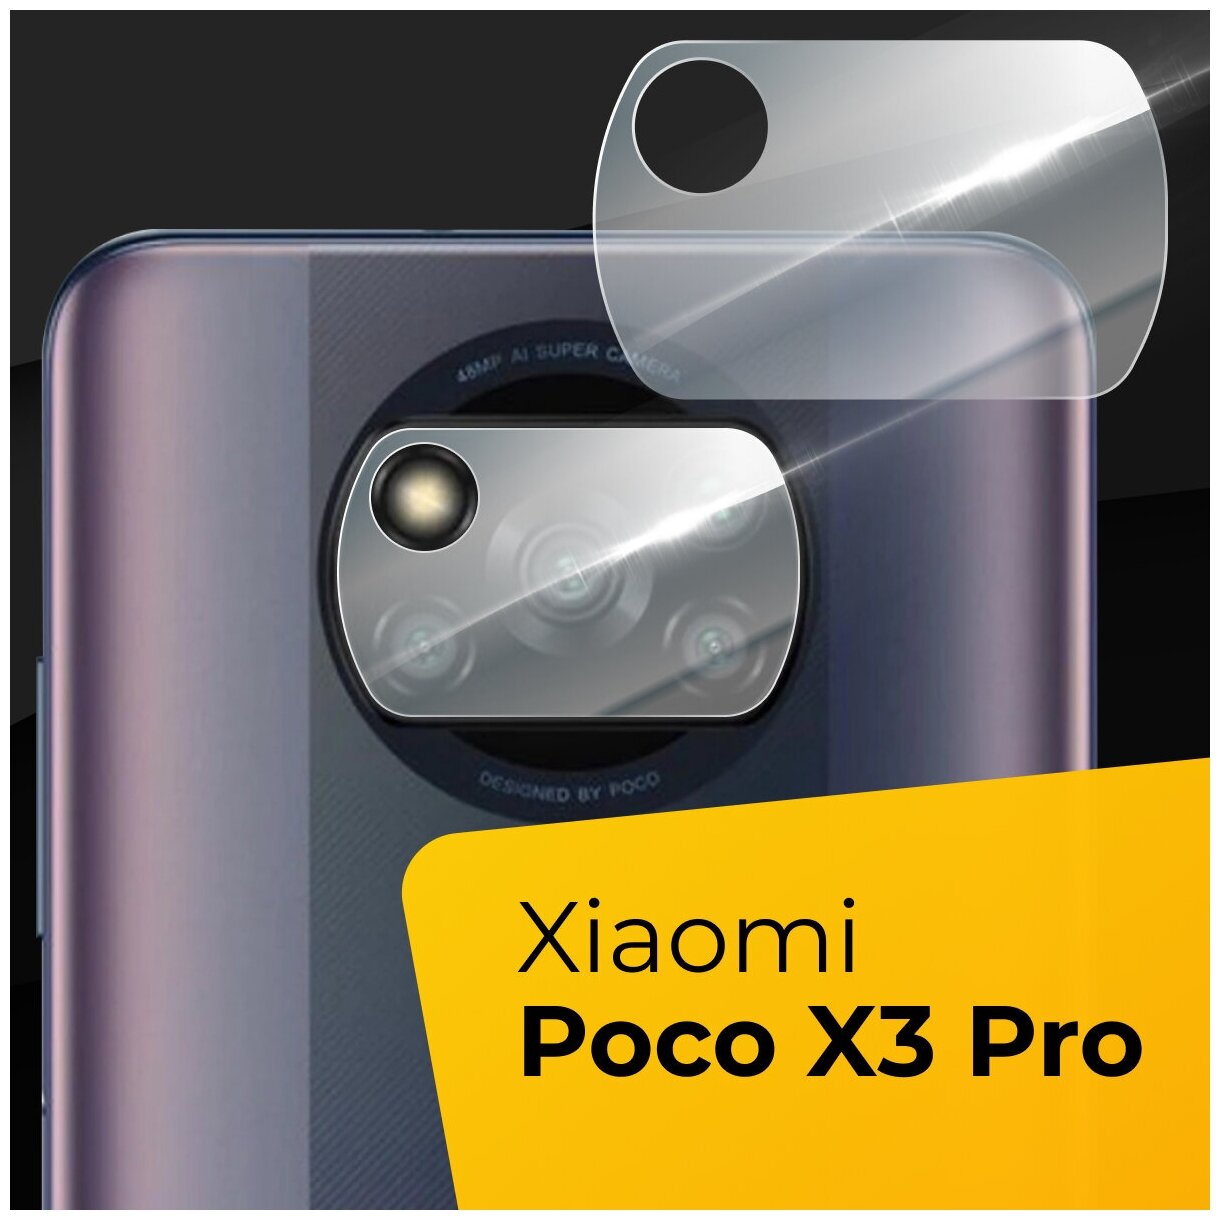 Противоударное защитное стекло для камеры телефона Xiaomi Poco X3 Pro / Тонкое прозрачное стекло на камеру смартфона Сяоми Поко Х3 Про / Защита камеры